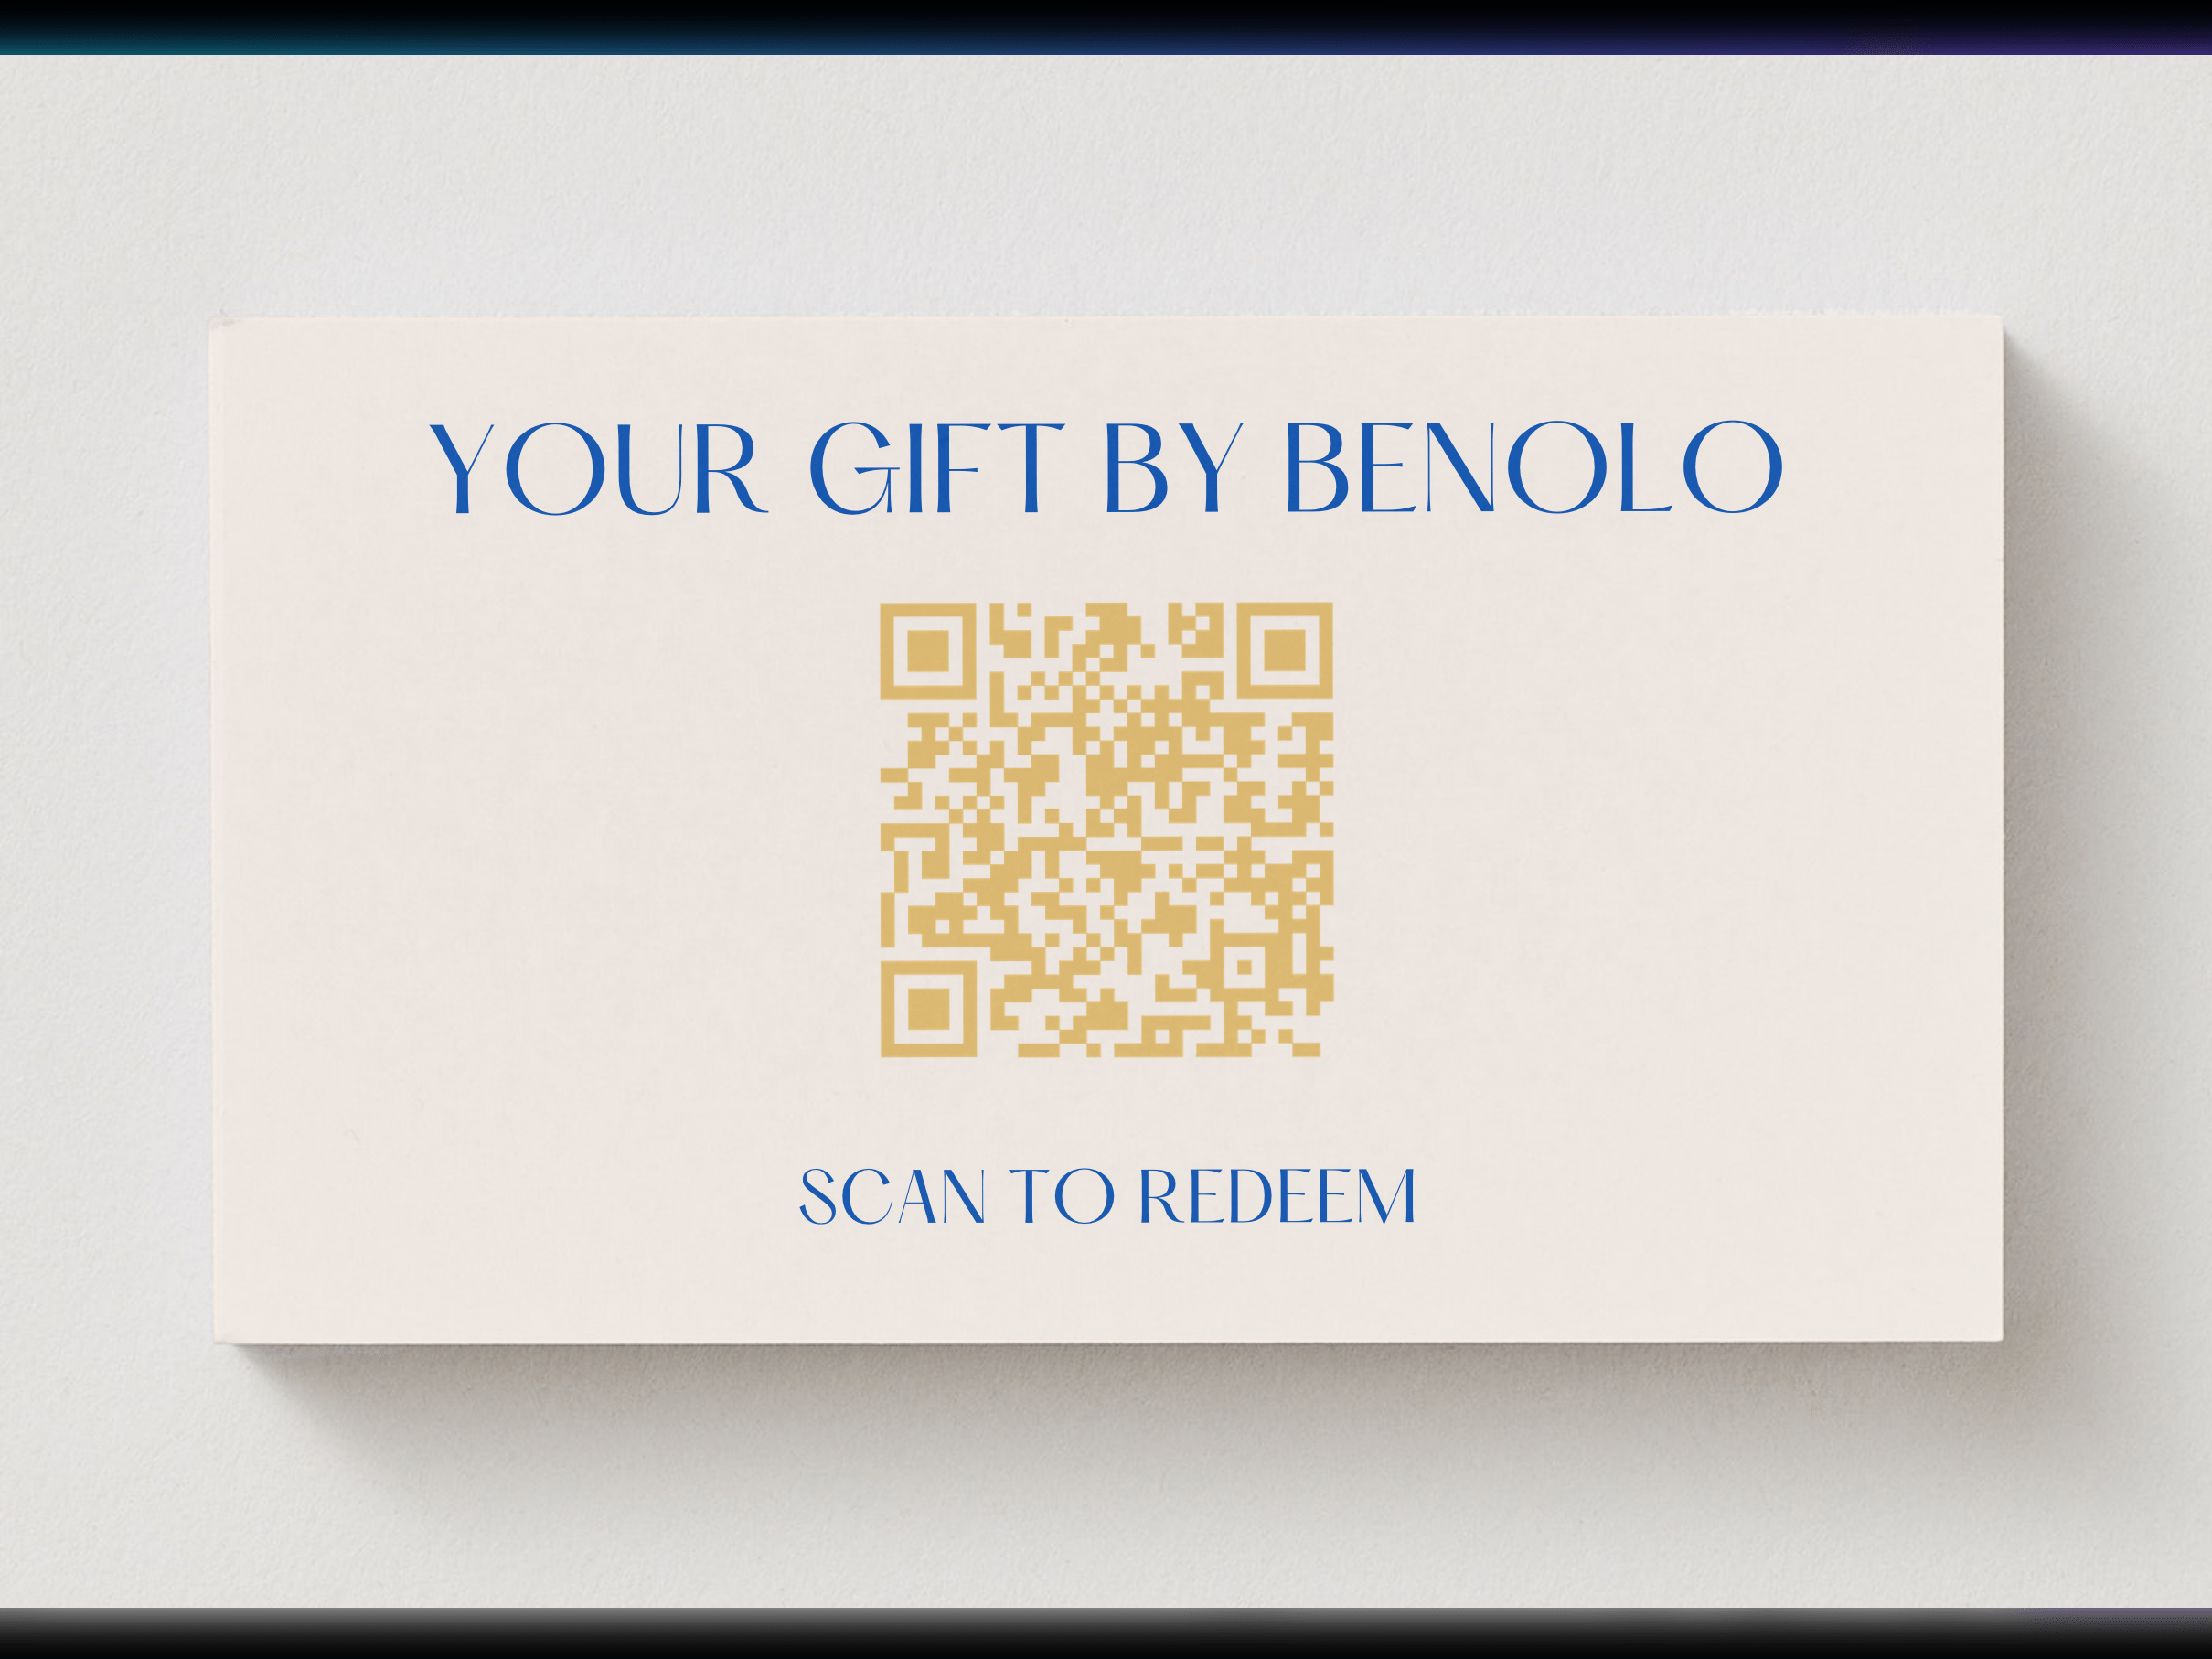 benolo wine gift qr code